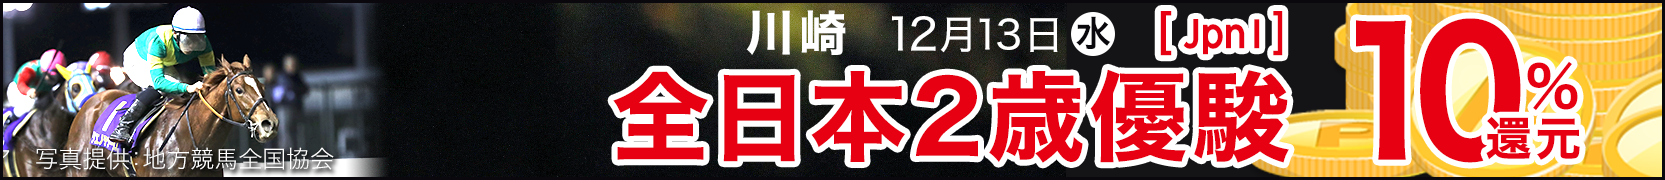 ダートグレード競走キャンペーン 全日本2歳優駿(JpnI)